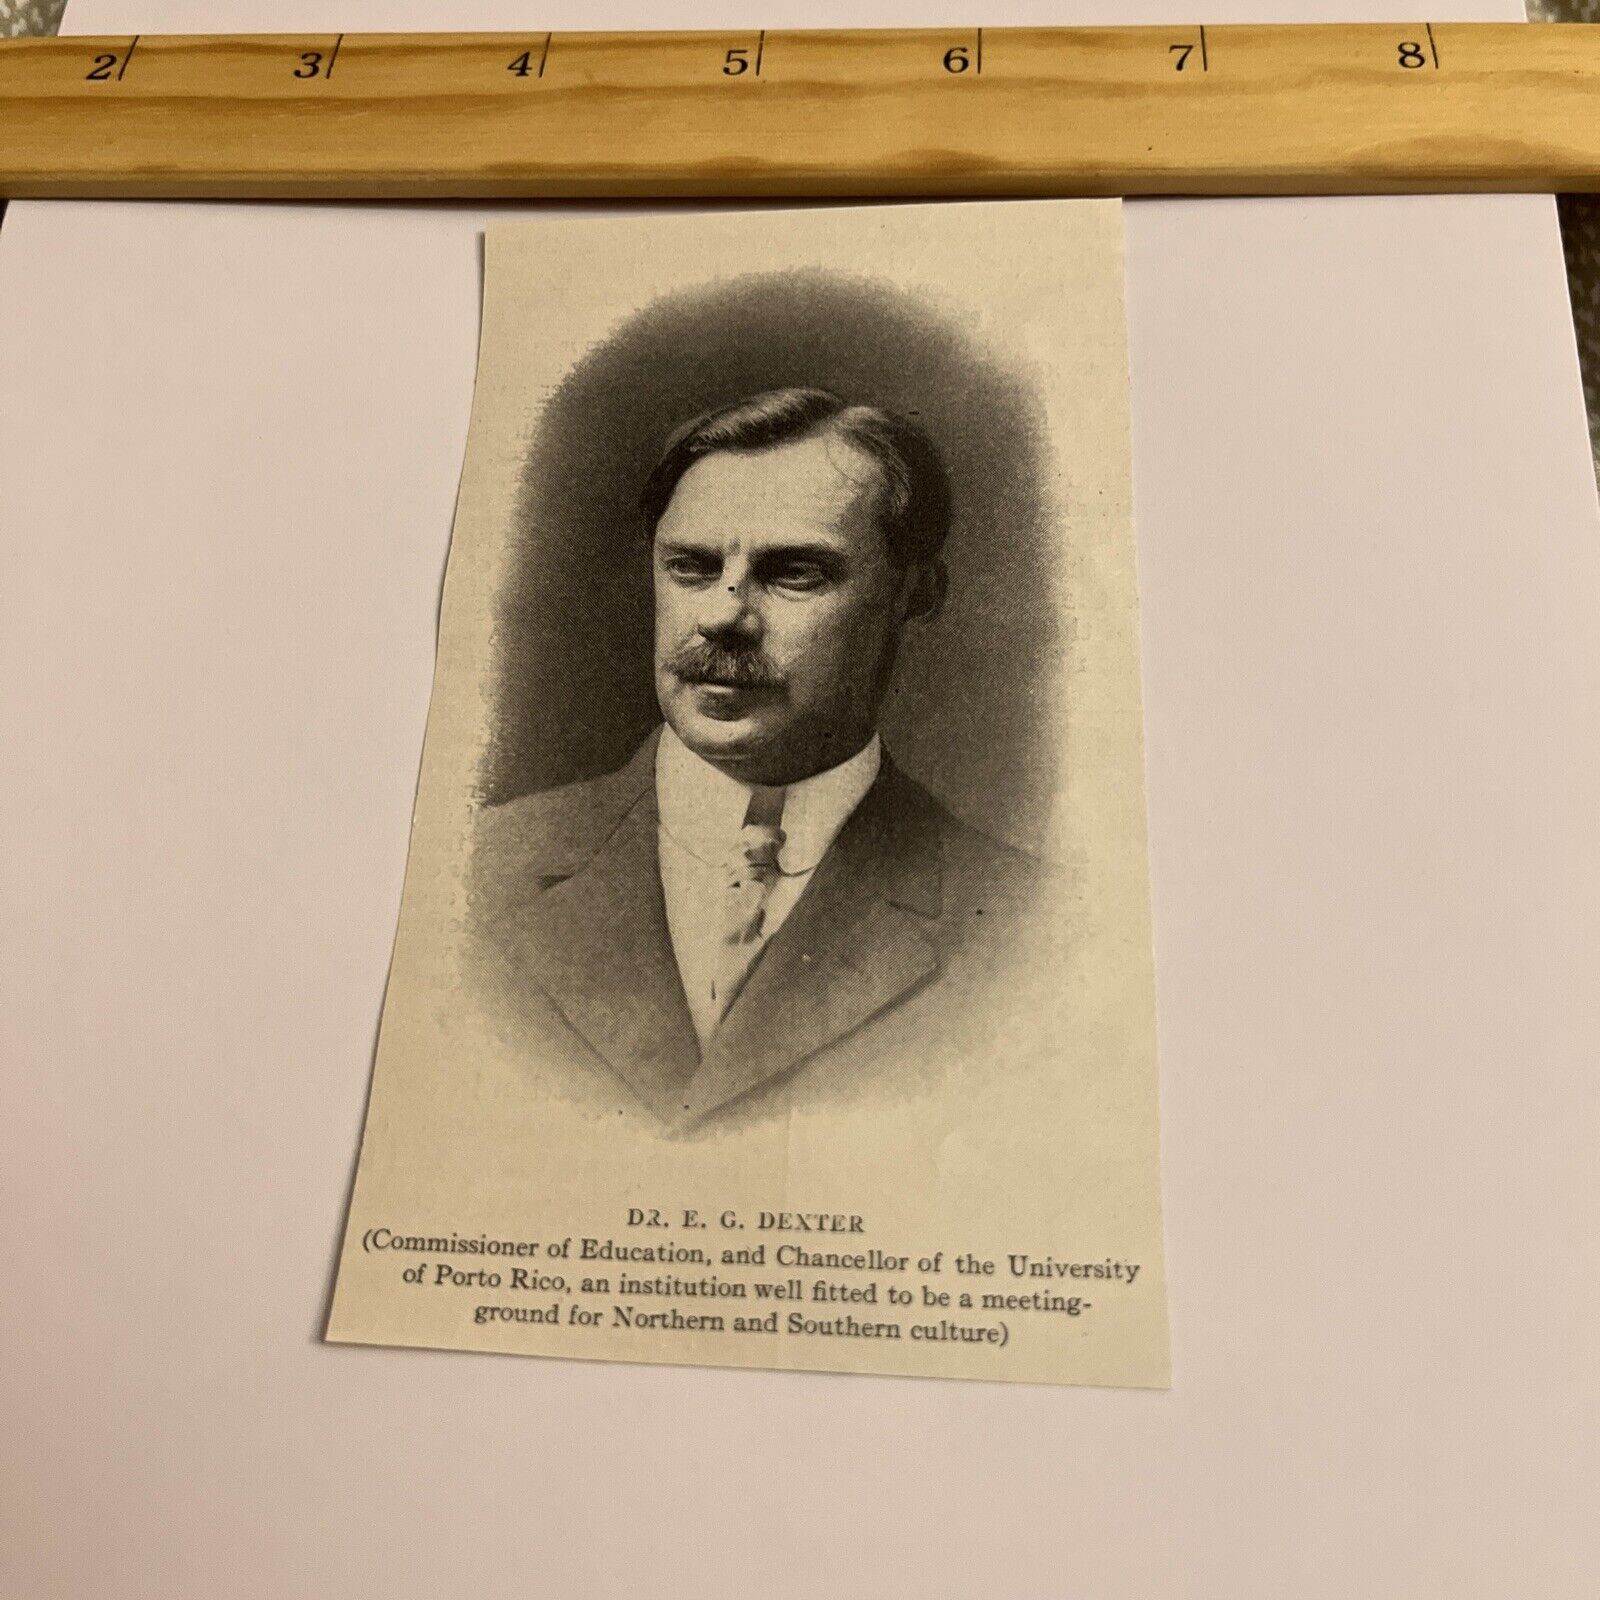 Antique 1912 Portrait: Dr E G Dexter, Chancellor of the University of Porto Rico